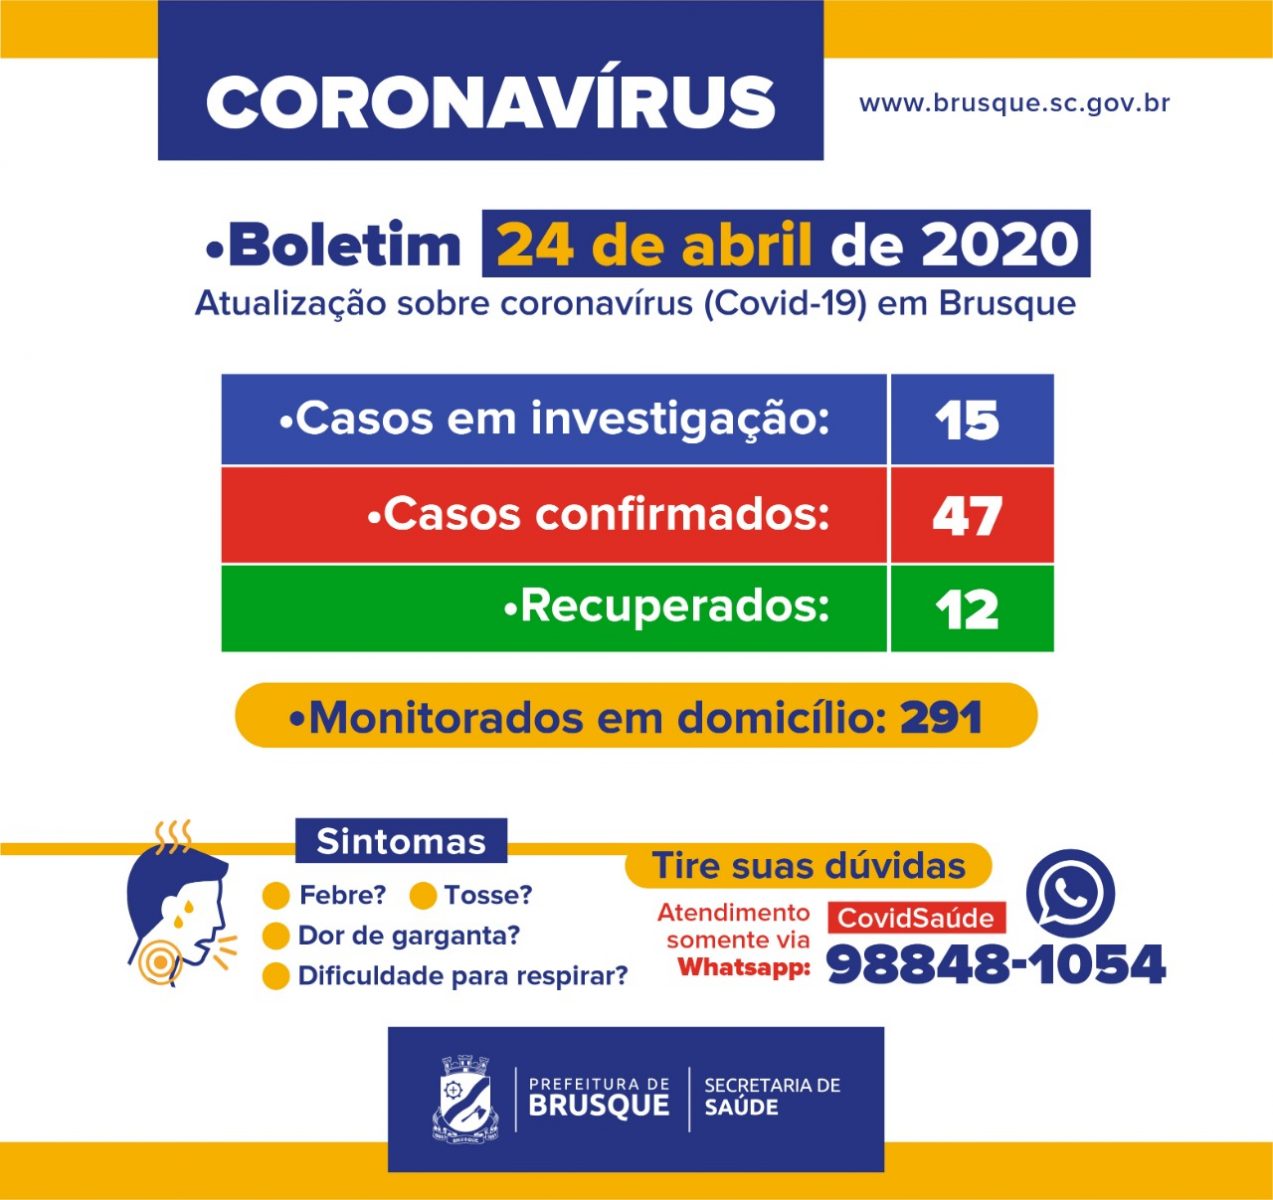 Brusque registra 47 casos de coronavírus